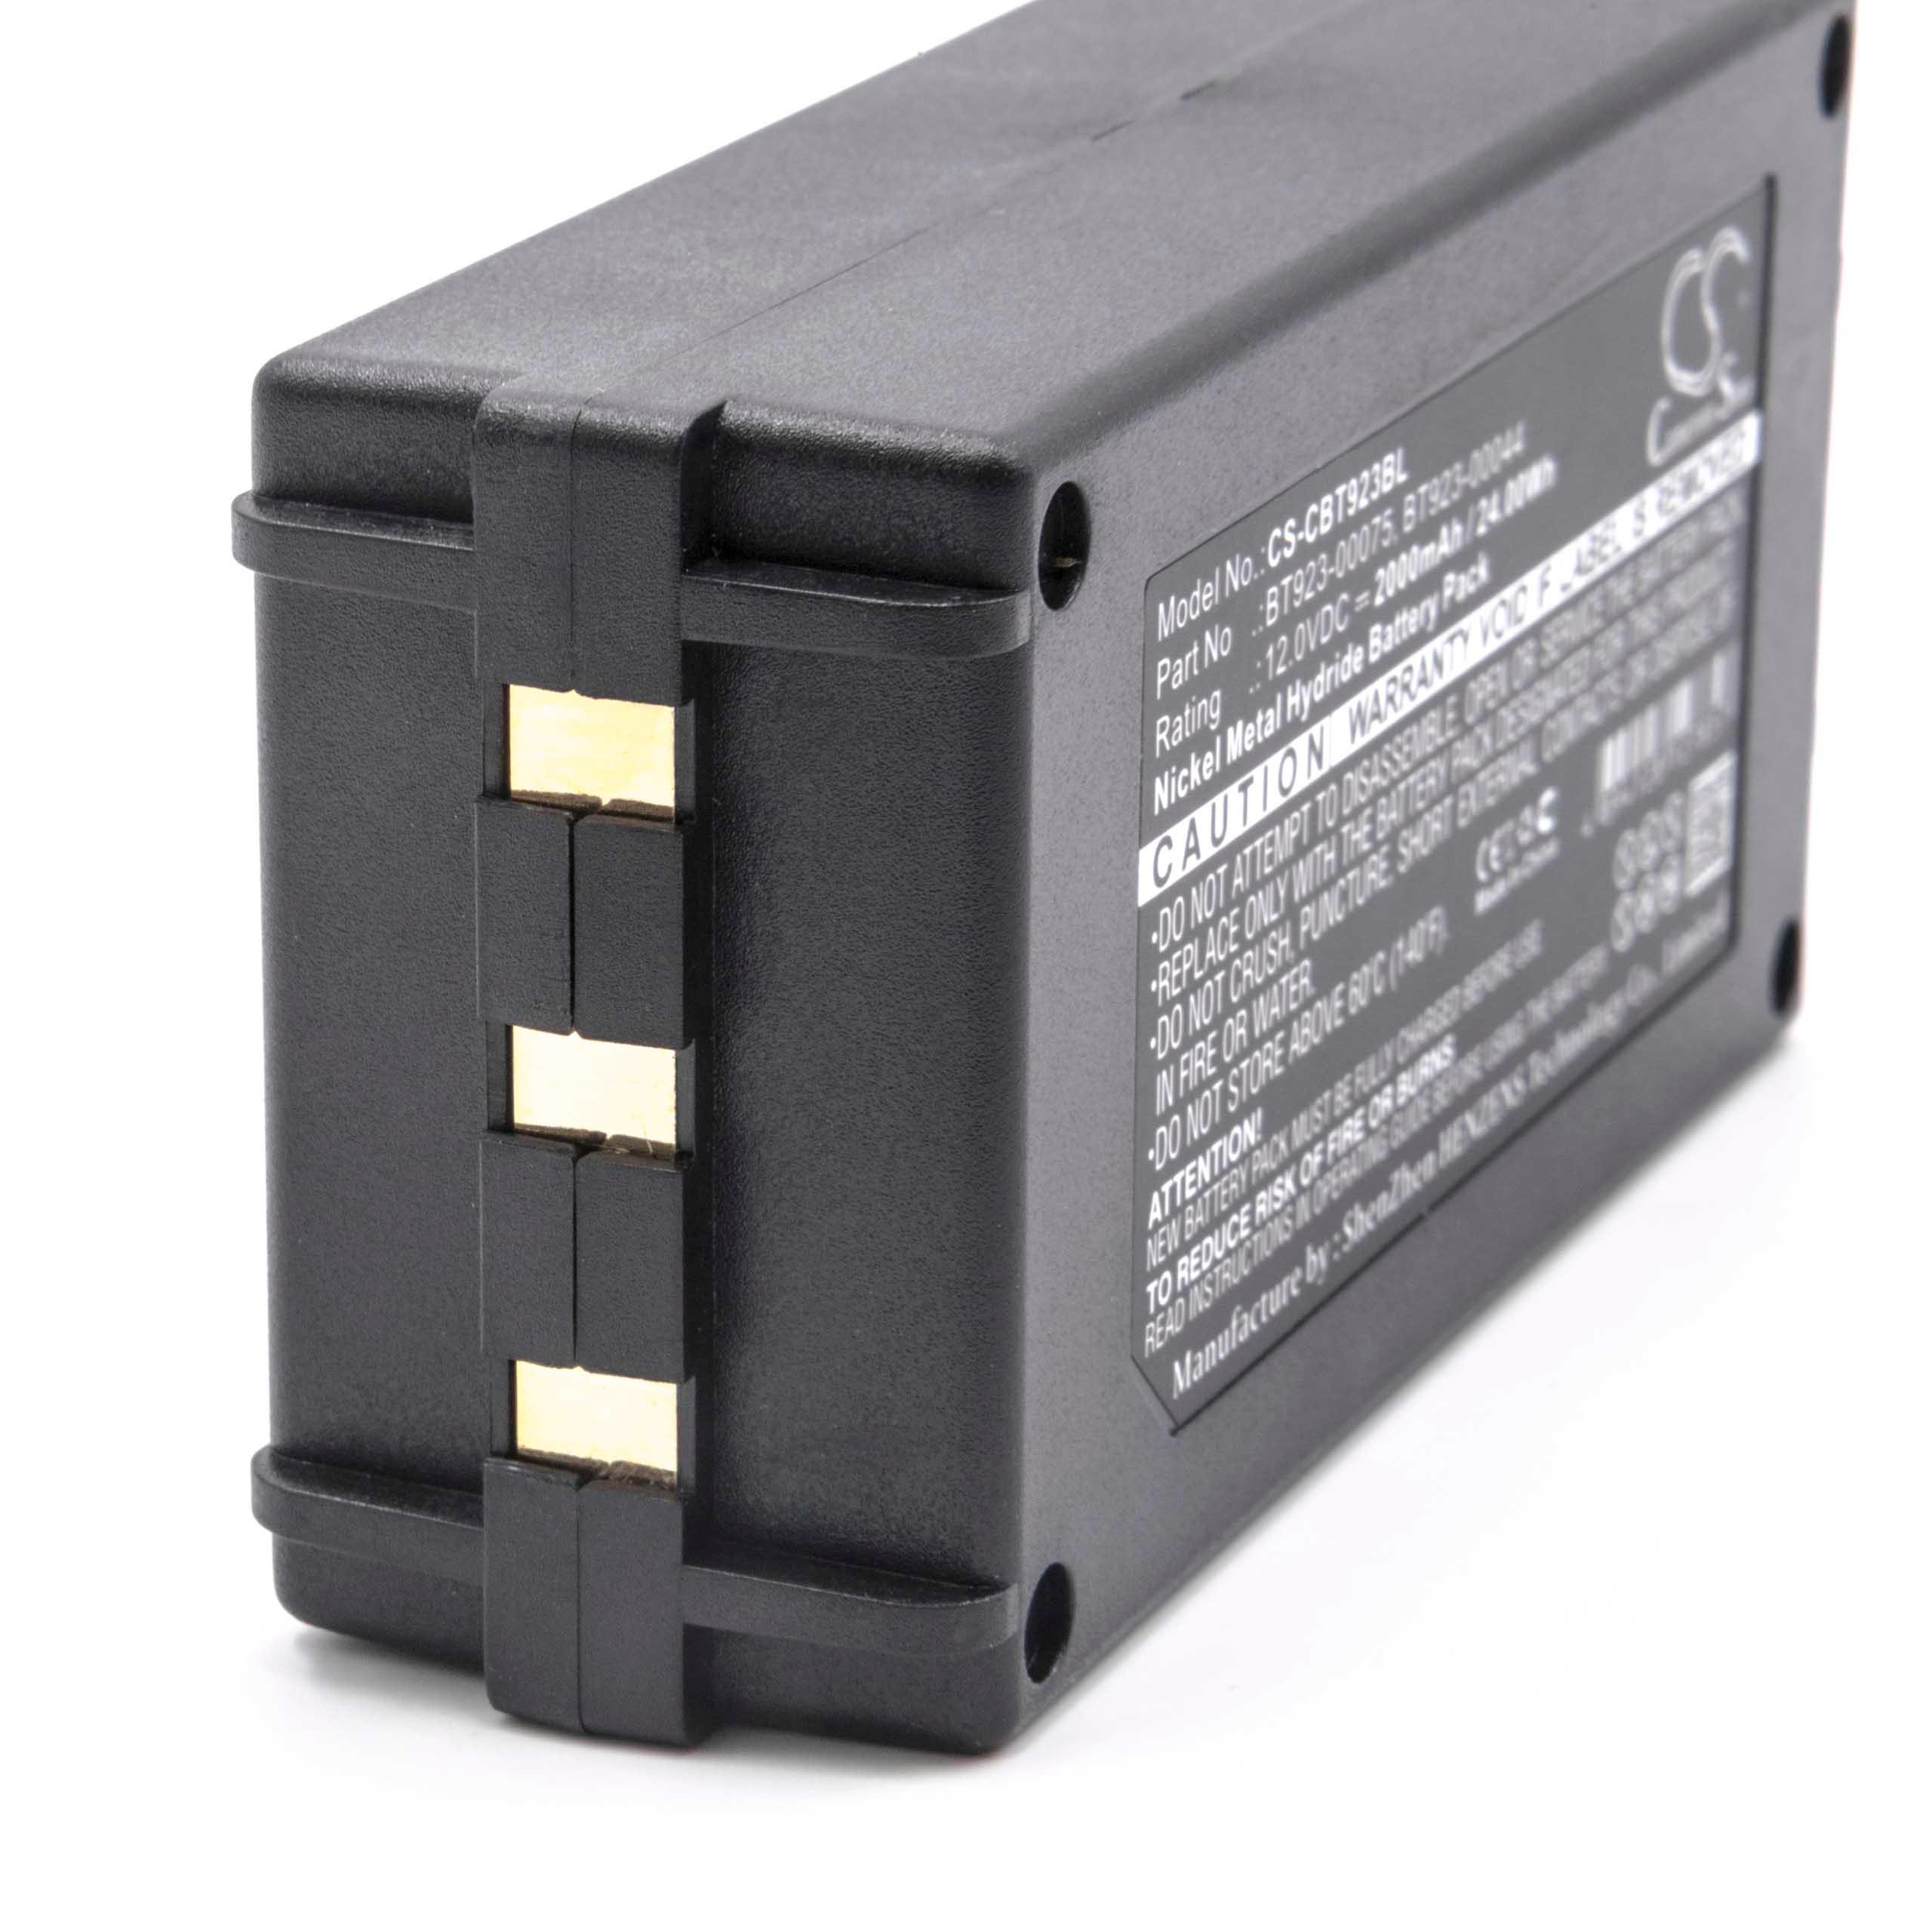 Batterie remplace Cattron-Theimeg BT081-00053 pour télécomande industrielle - 2000mAh 12V NiMH